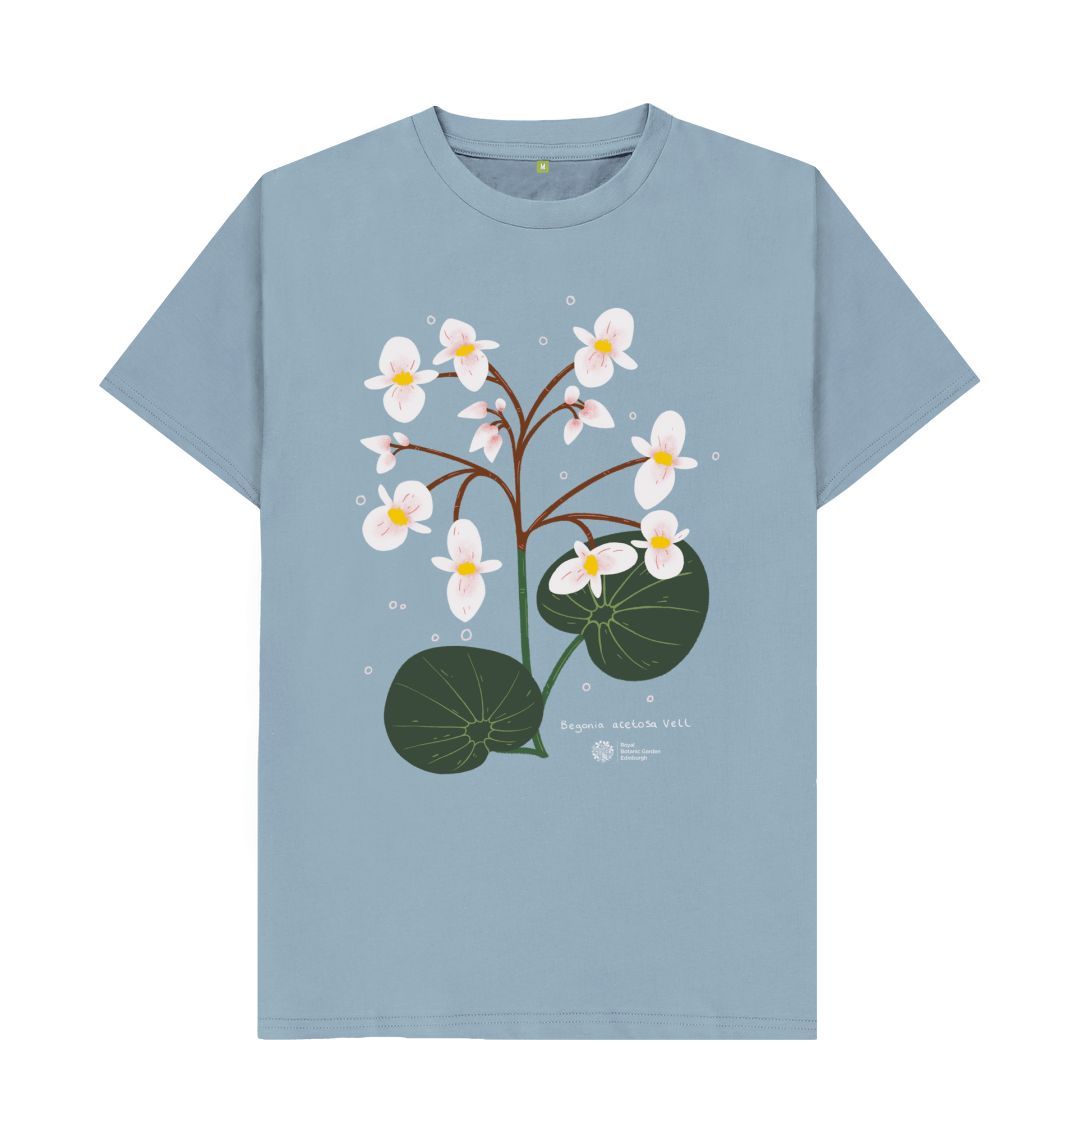 Stone Blue Begonia Acetosa Vell Unisex T-shirt